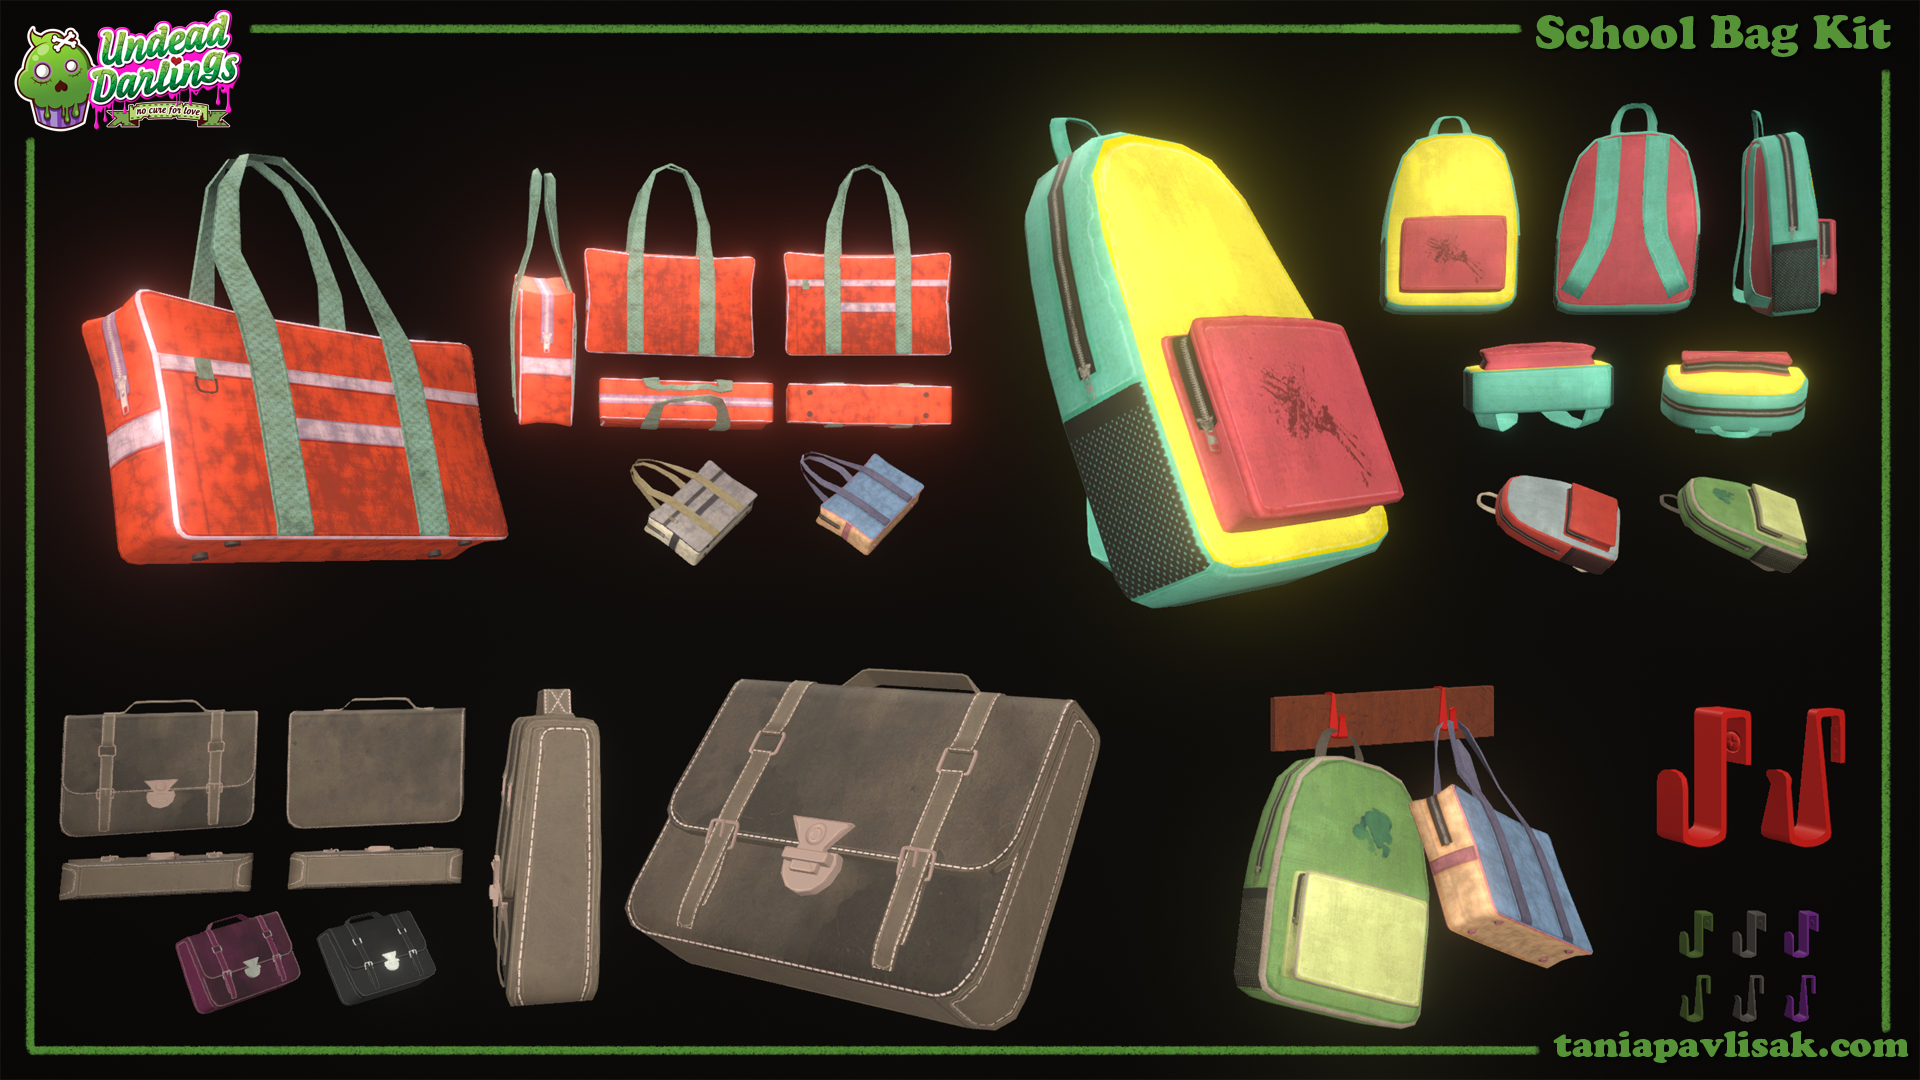 Variety of school bags